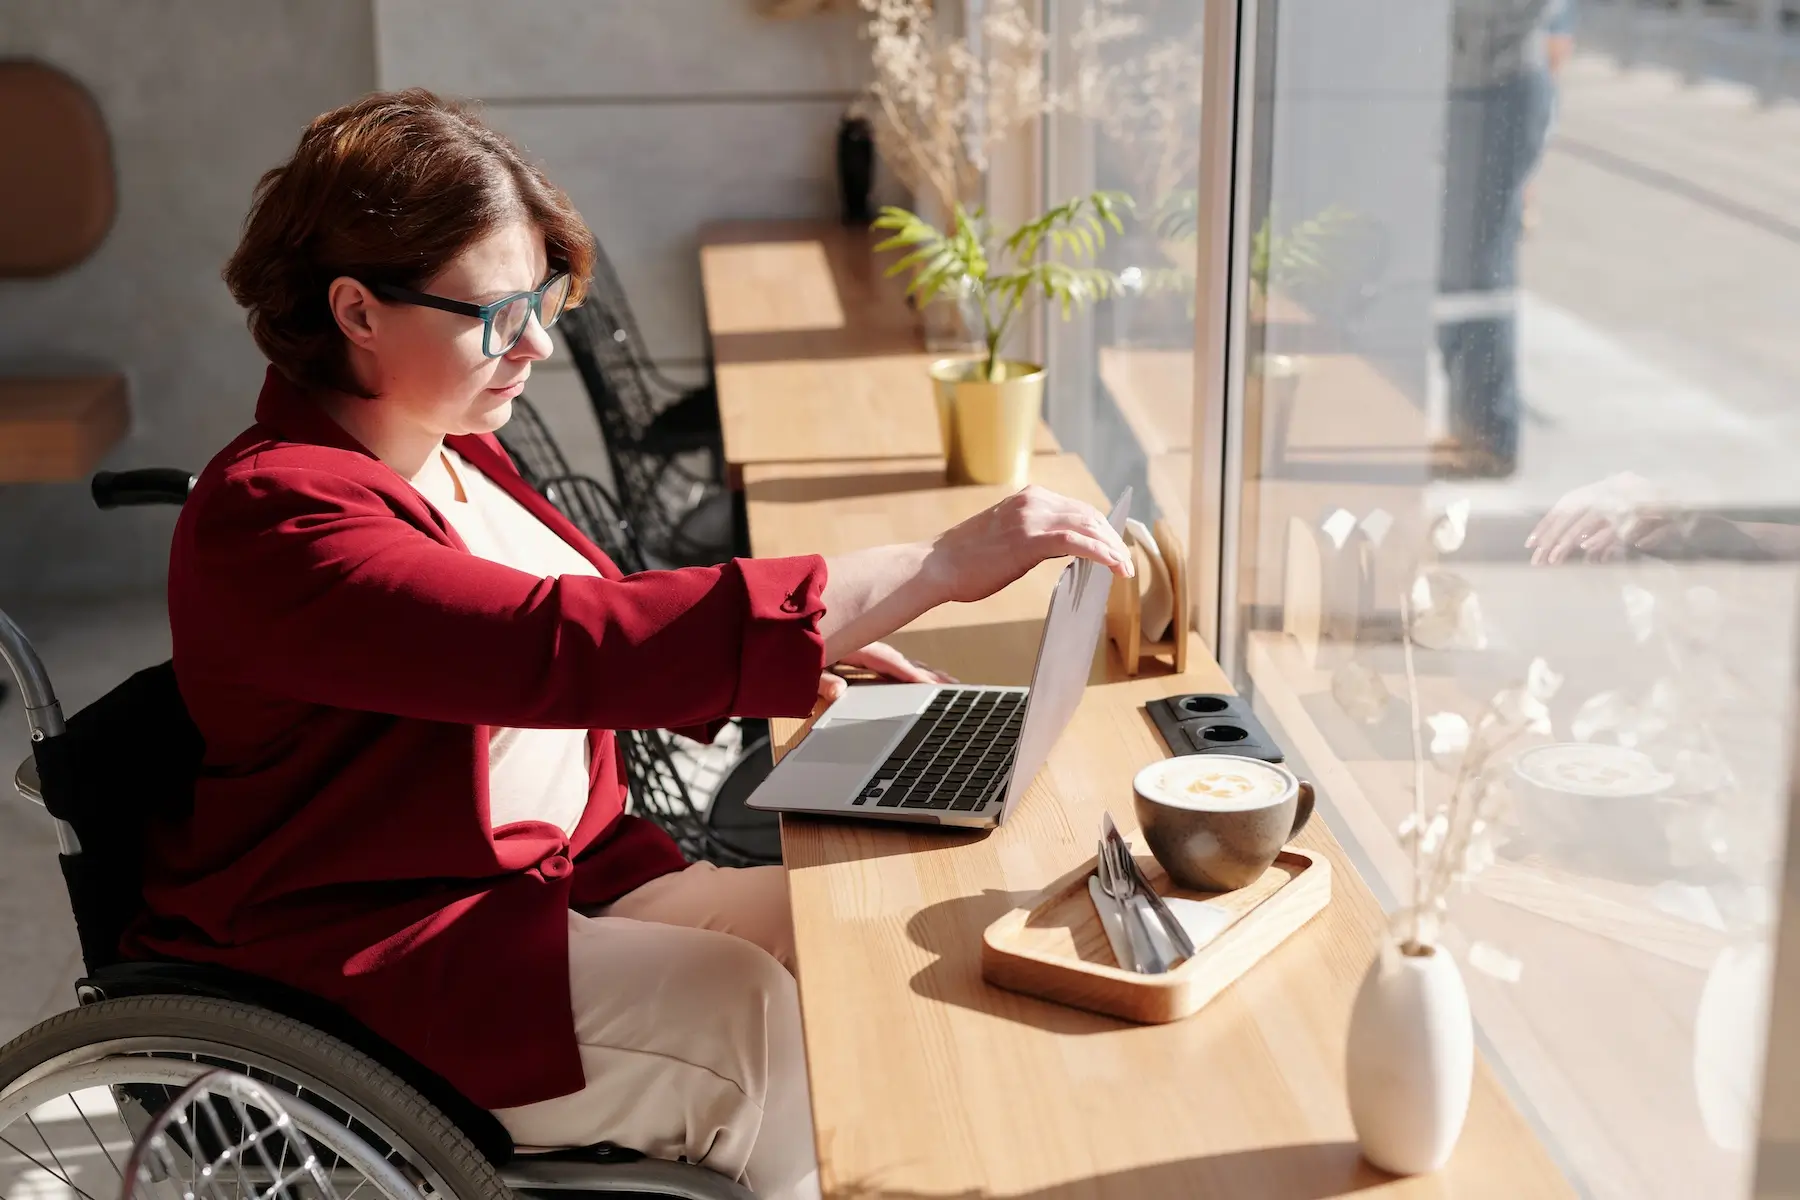 na zdjęciu kobieta z niepełnosprawnością na wózku. Przed komputerem, który stoi na długim biurku lub parapecie. Na drugim planie duże okno